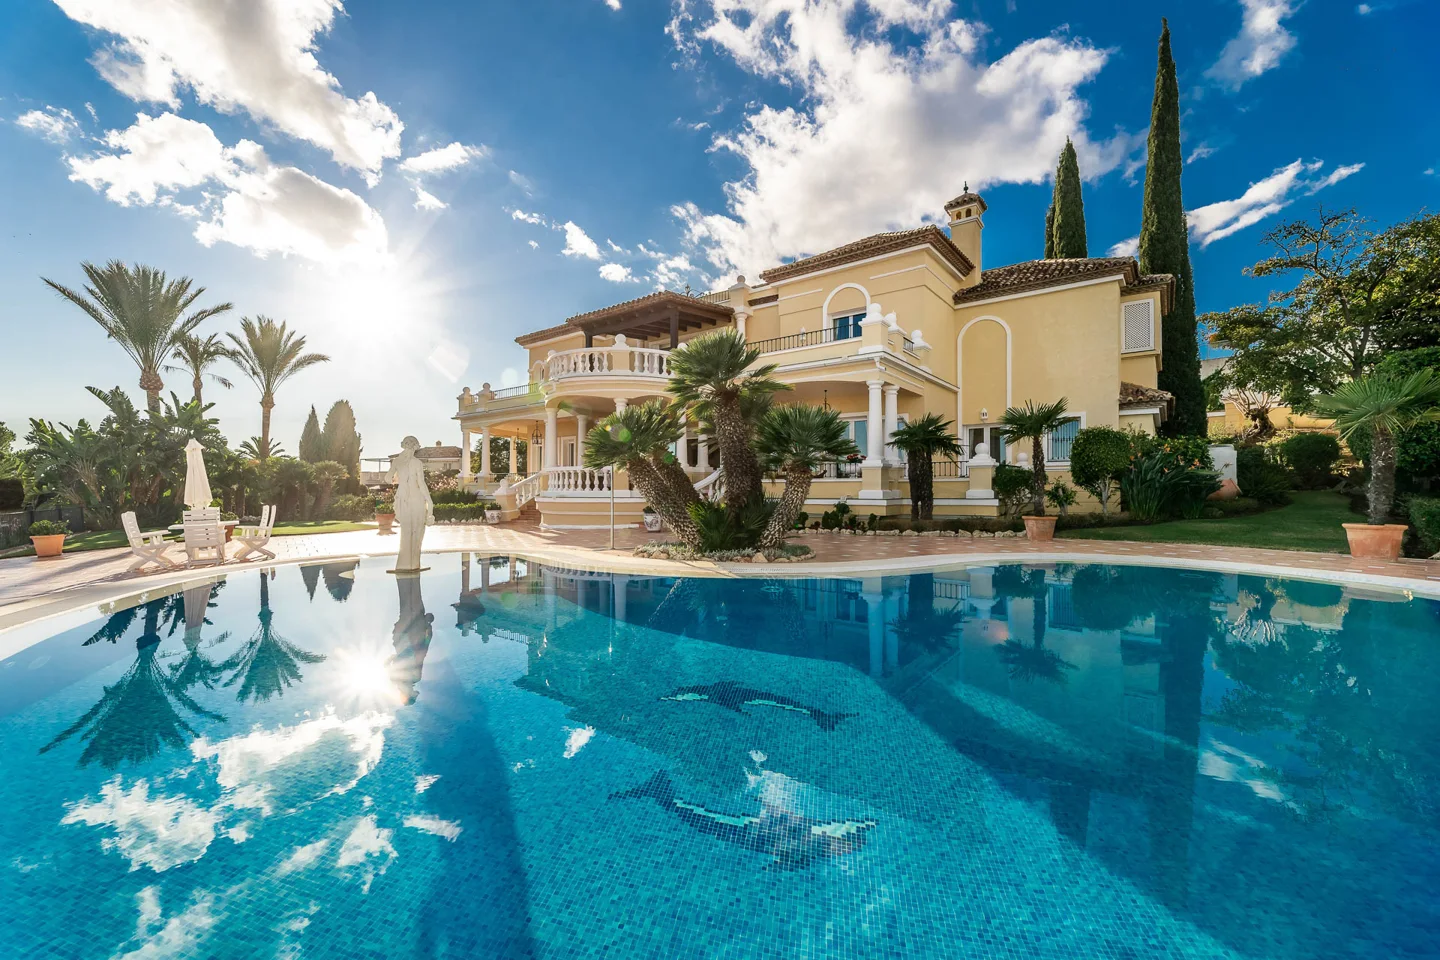 El Paraiso Alto: Finca elegante con jardines majestuosos, piscina y vistas panorámicas de la Costa.